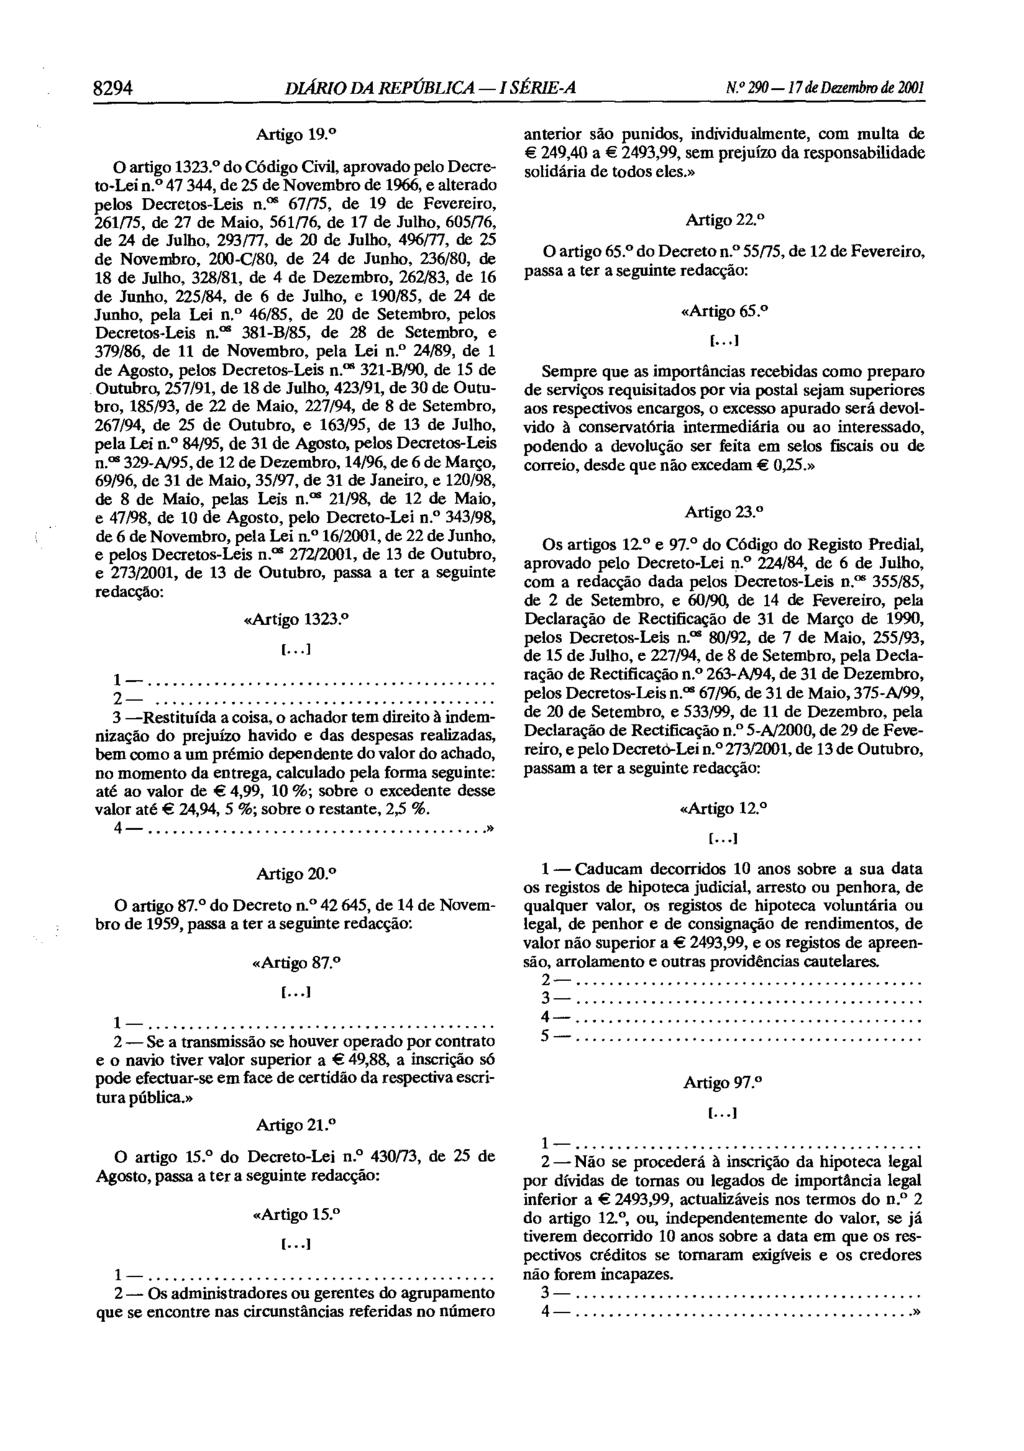 8294 DIÁRIO DA REPÚBLICA - I SÉRIE-A N. 290-17 de Dezembro de 2001 Artigo 19. O artigo 1323. do Código Civil, aprovado pelo Decreto-Lei n.